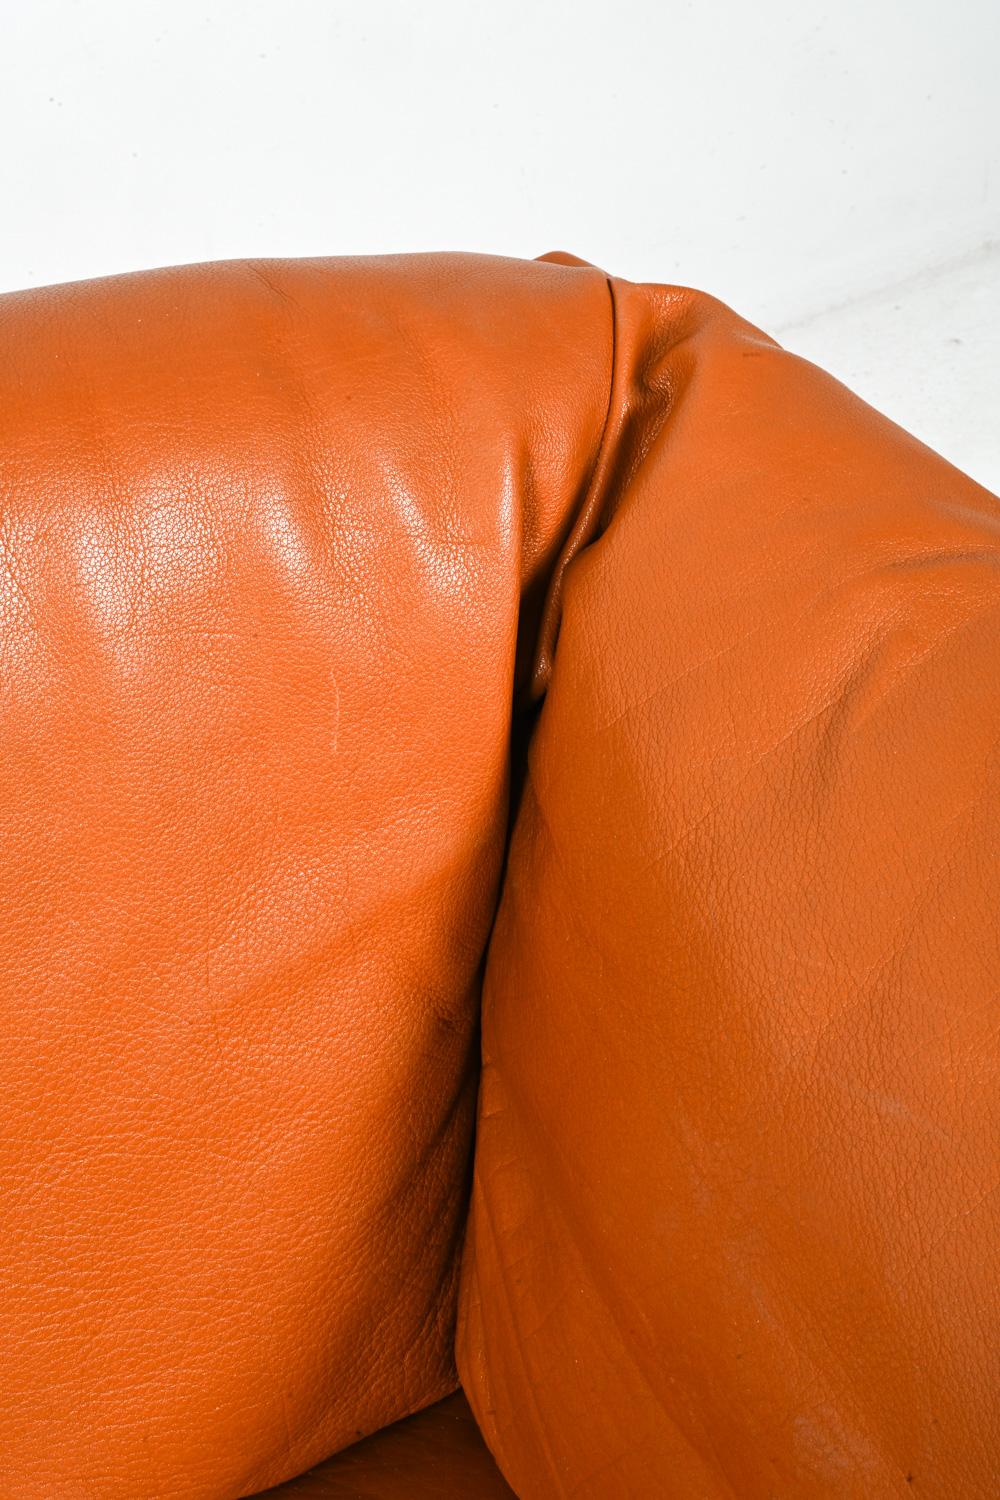 Mogens Hansen Danish Modern Two-Seat Sofa in Leather & Oak For Sale 1